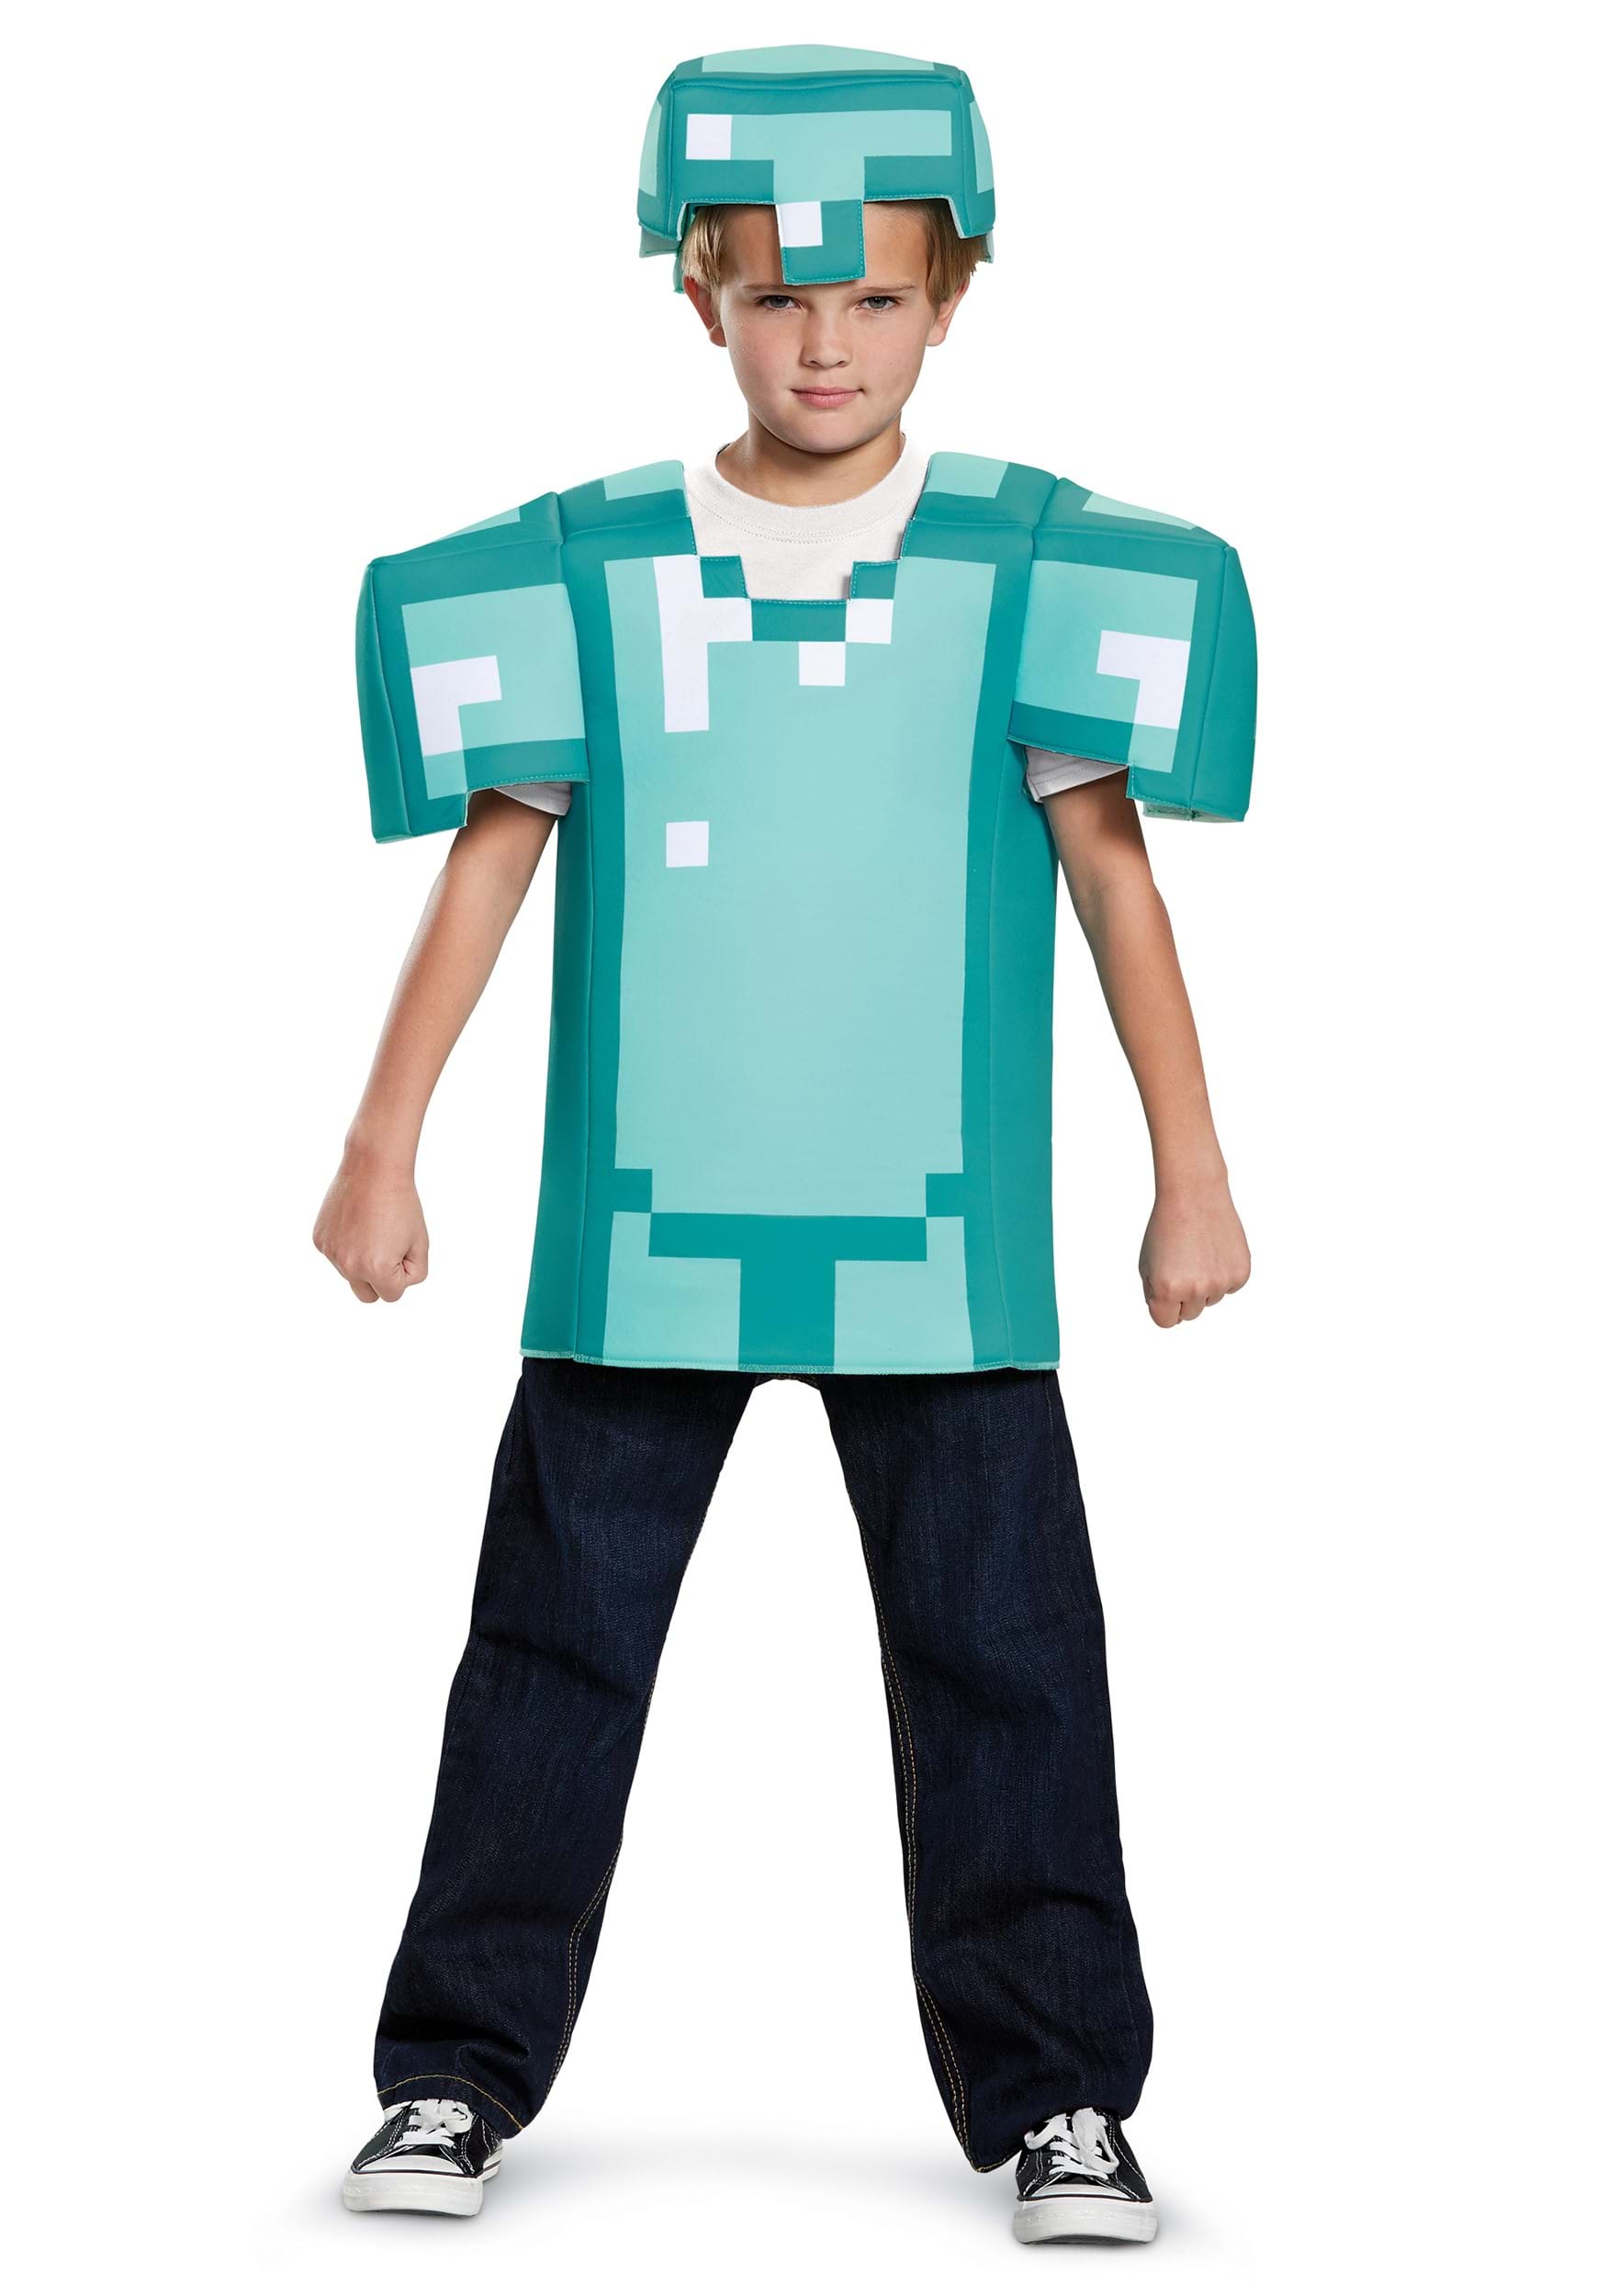  Steve Classic Minecraft Costume, Multicolor, Small (4